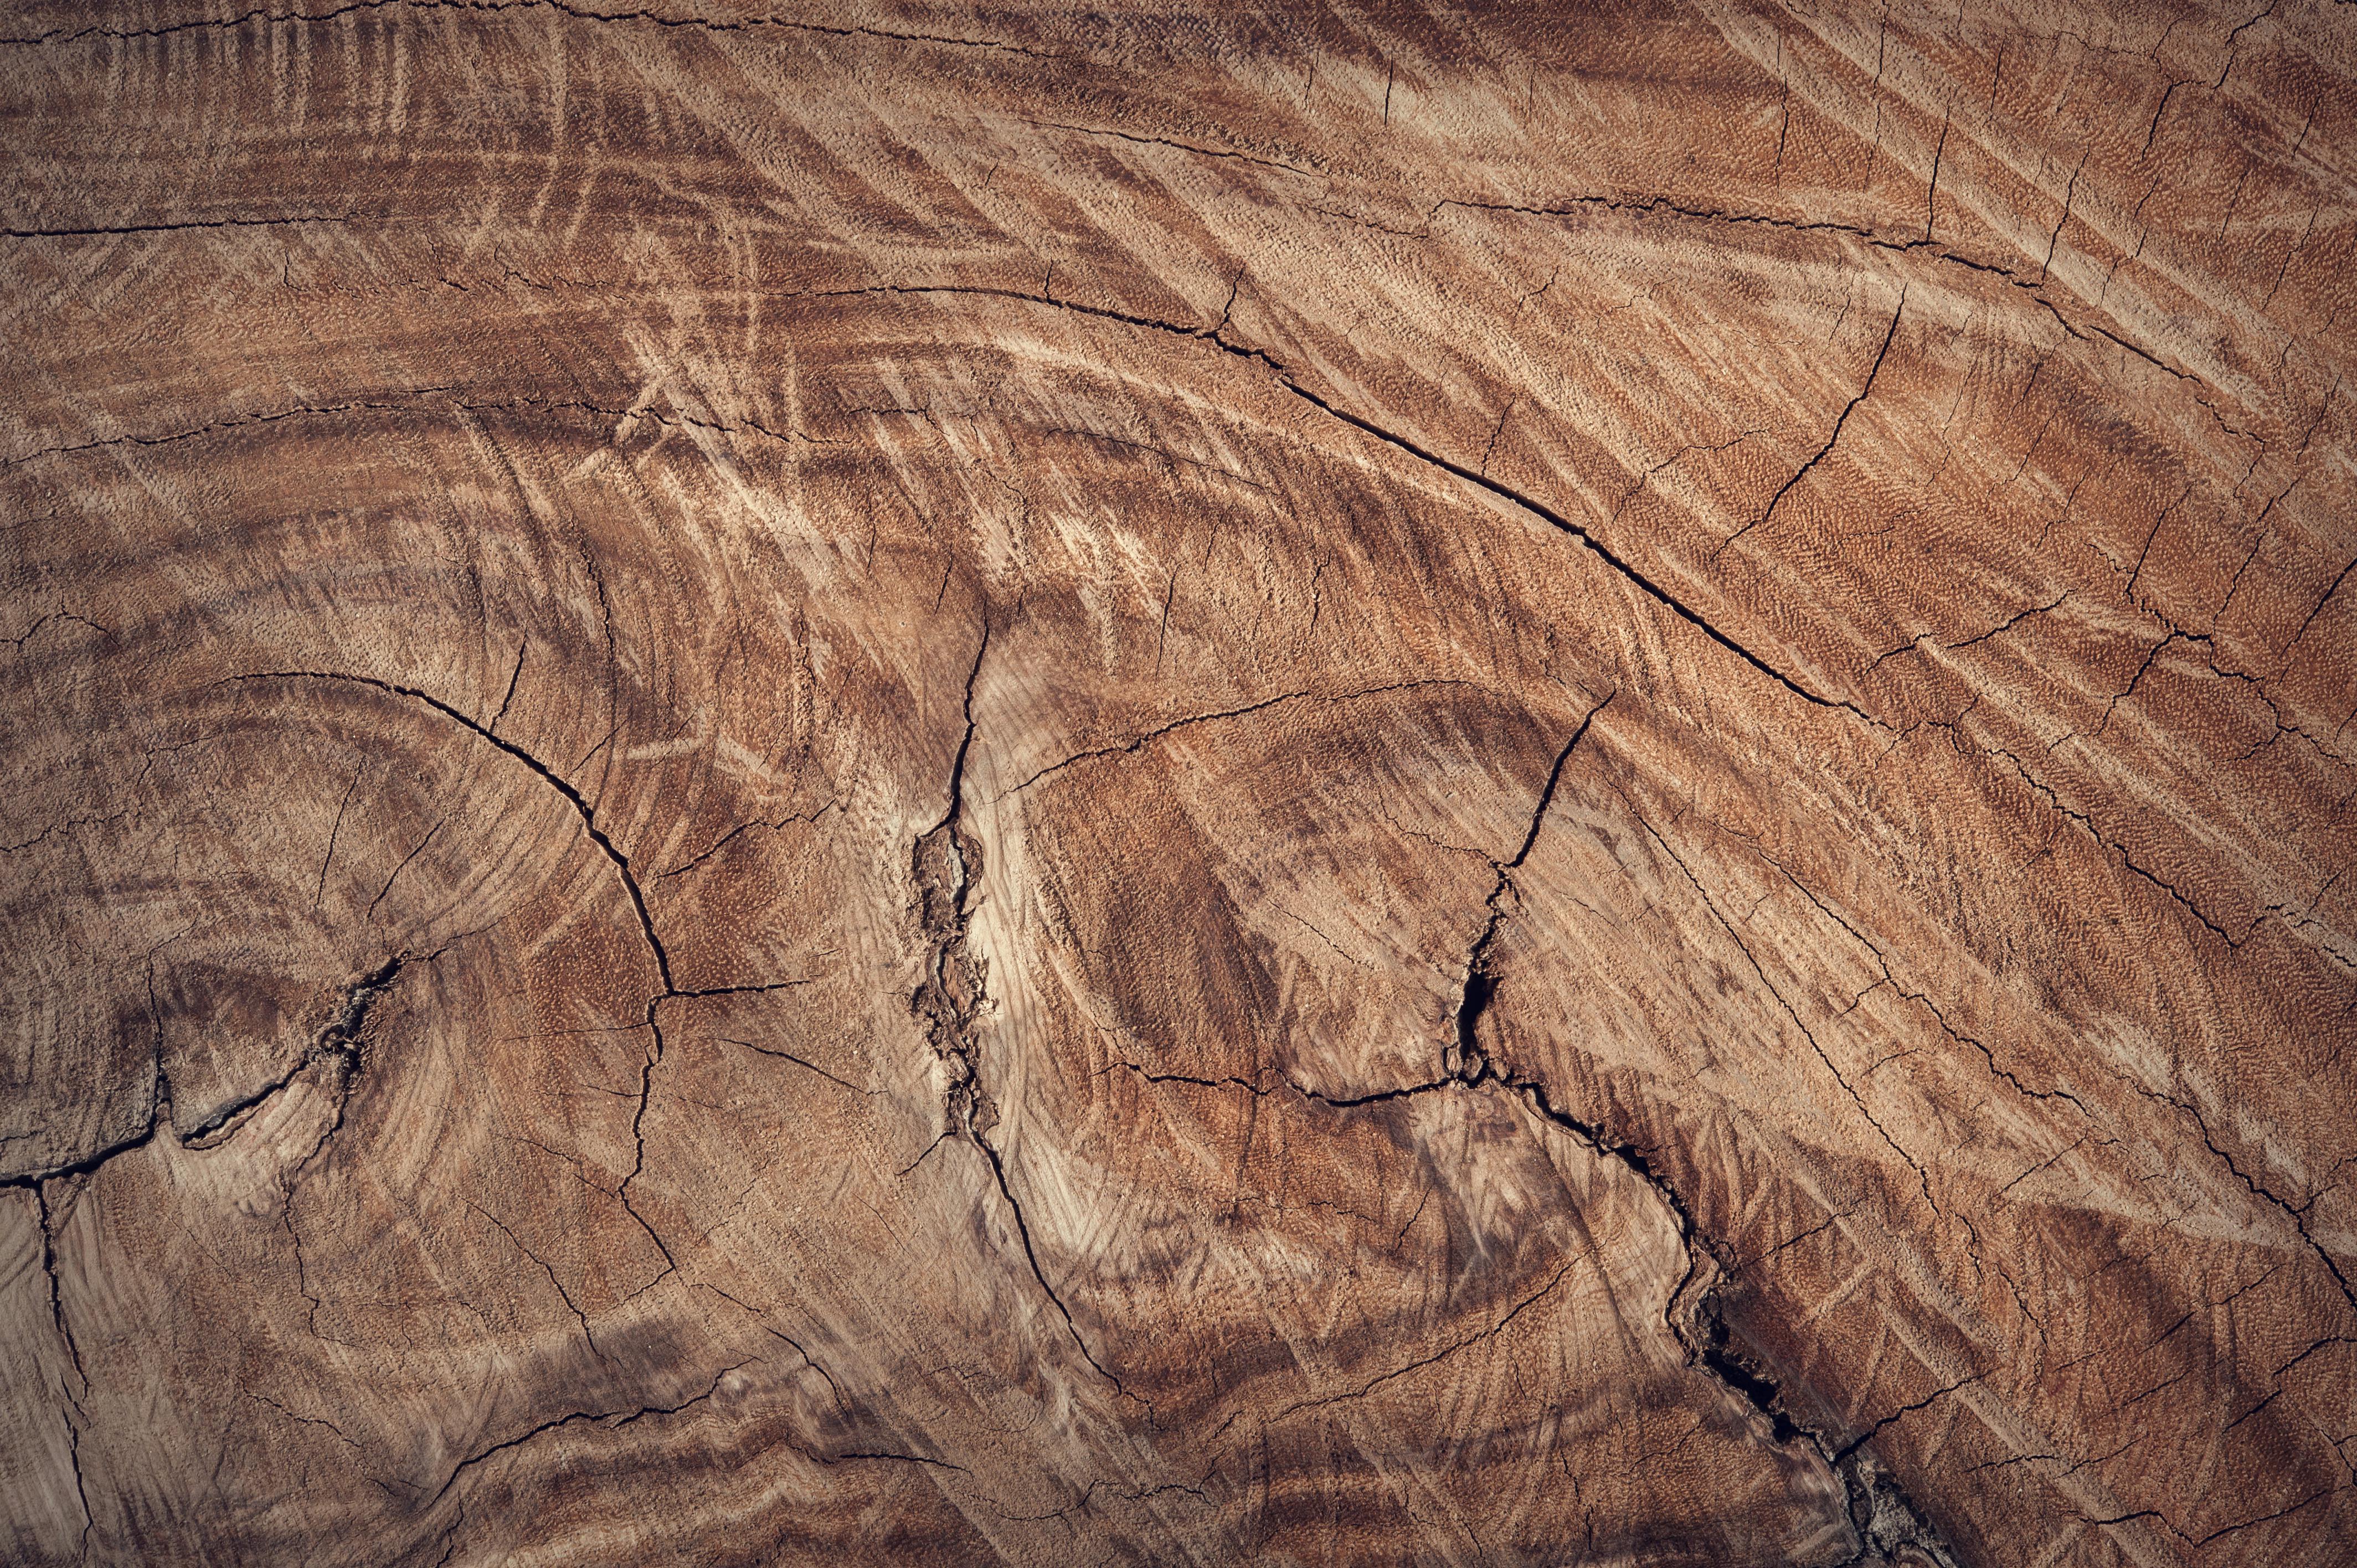 tree log texture